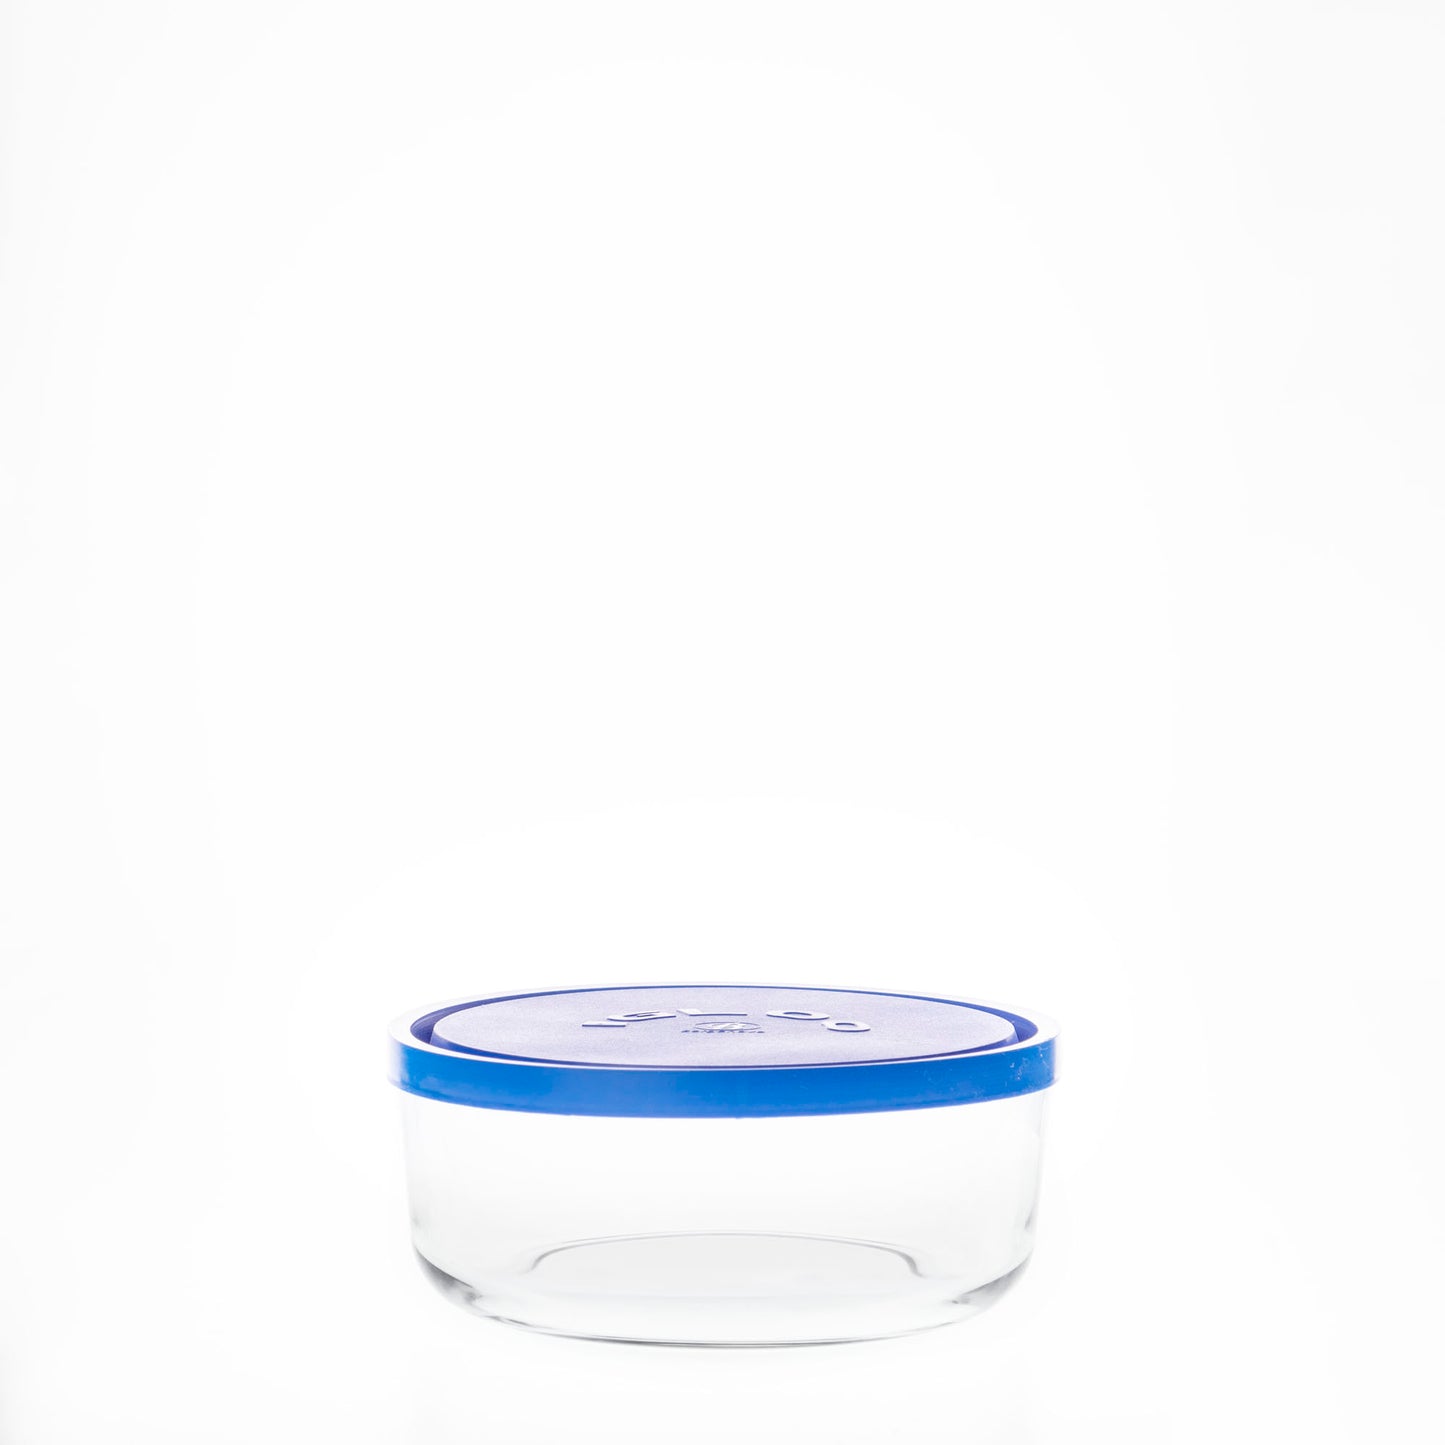 "Igloo Circle" Contenedor de Vidrio con Tapa Azul / Blanca.